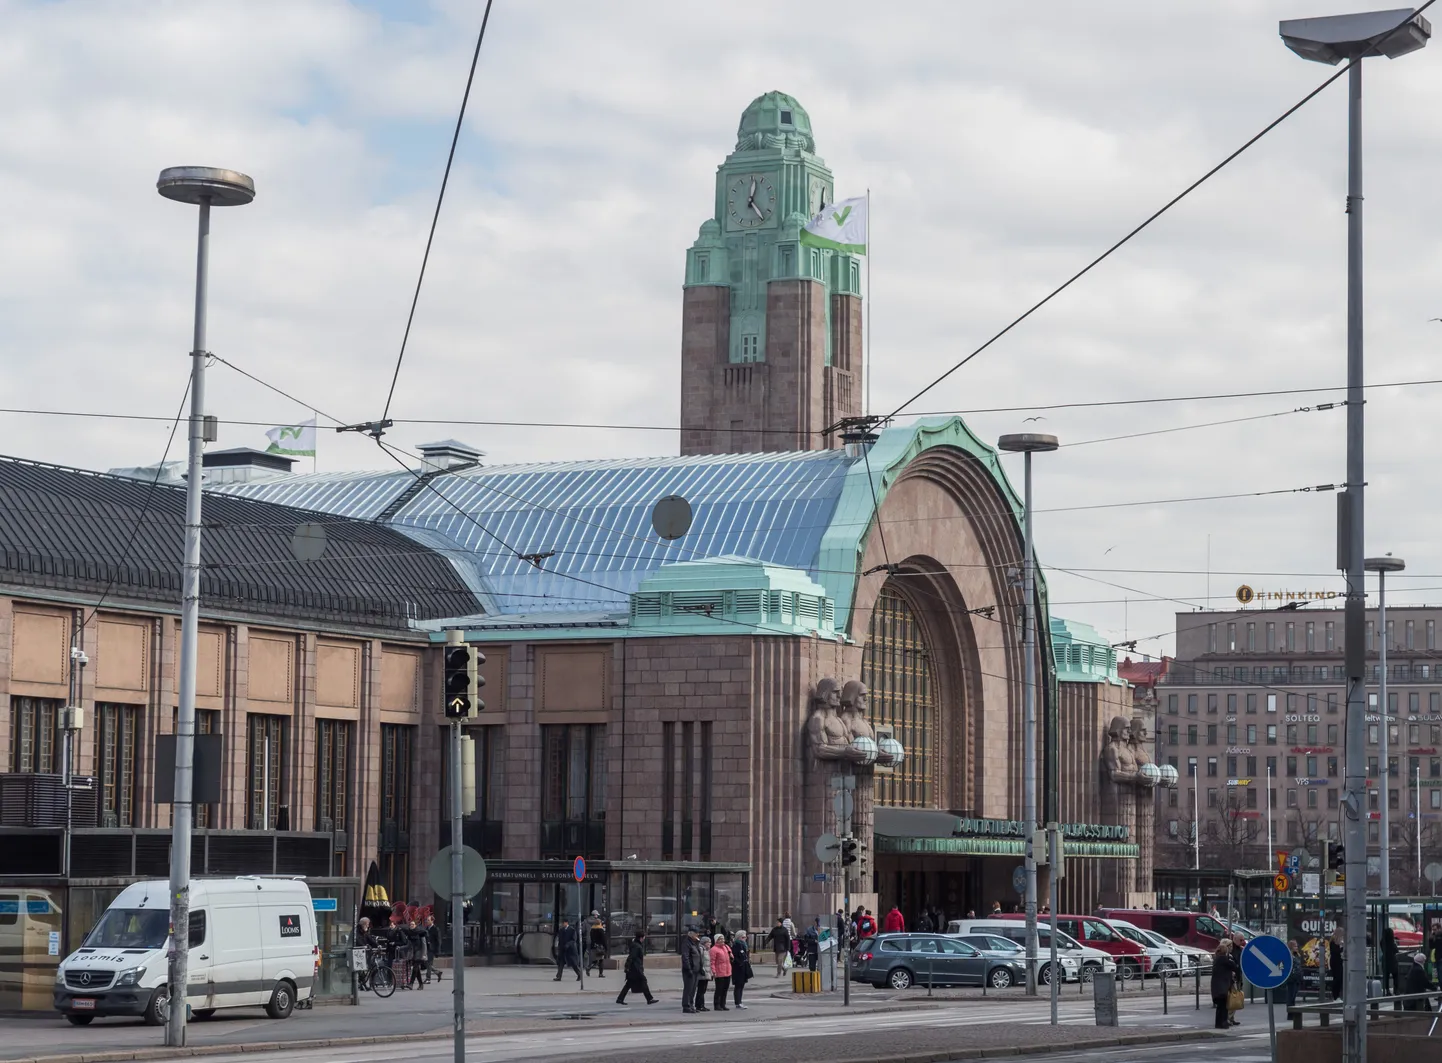 Helsingi raudteejaam, mille lähedal õnnetus toimus.